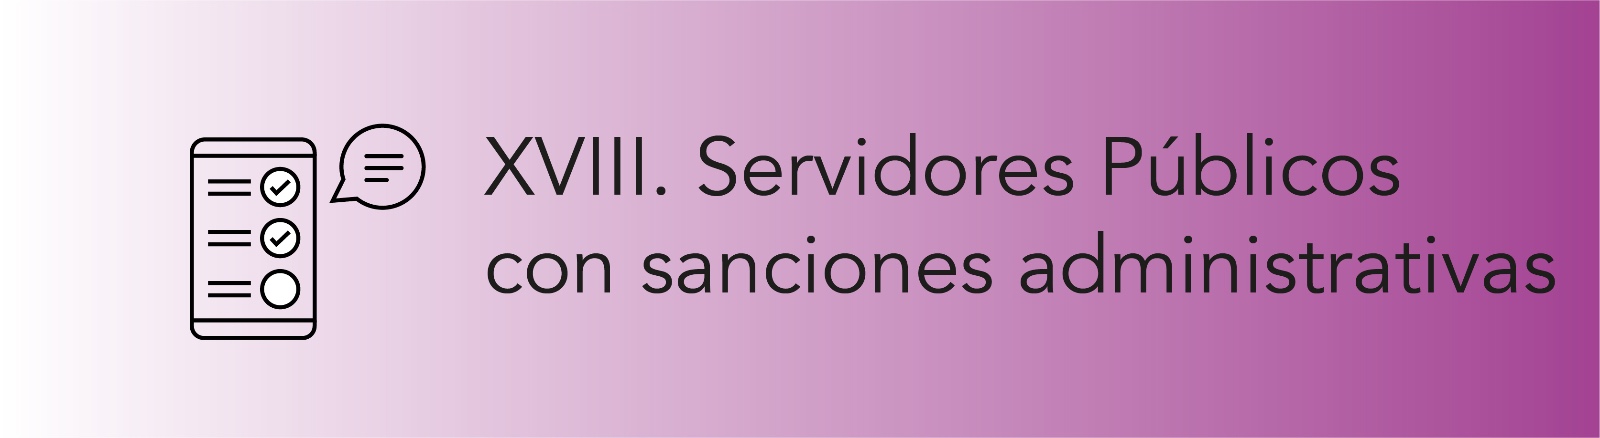 Imagen que permite conocer a los Servidores Públicos con sanciones administrativas